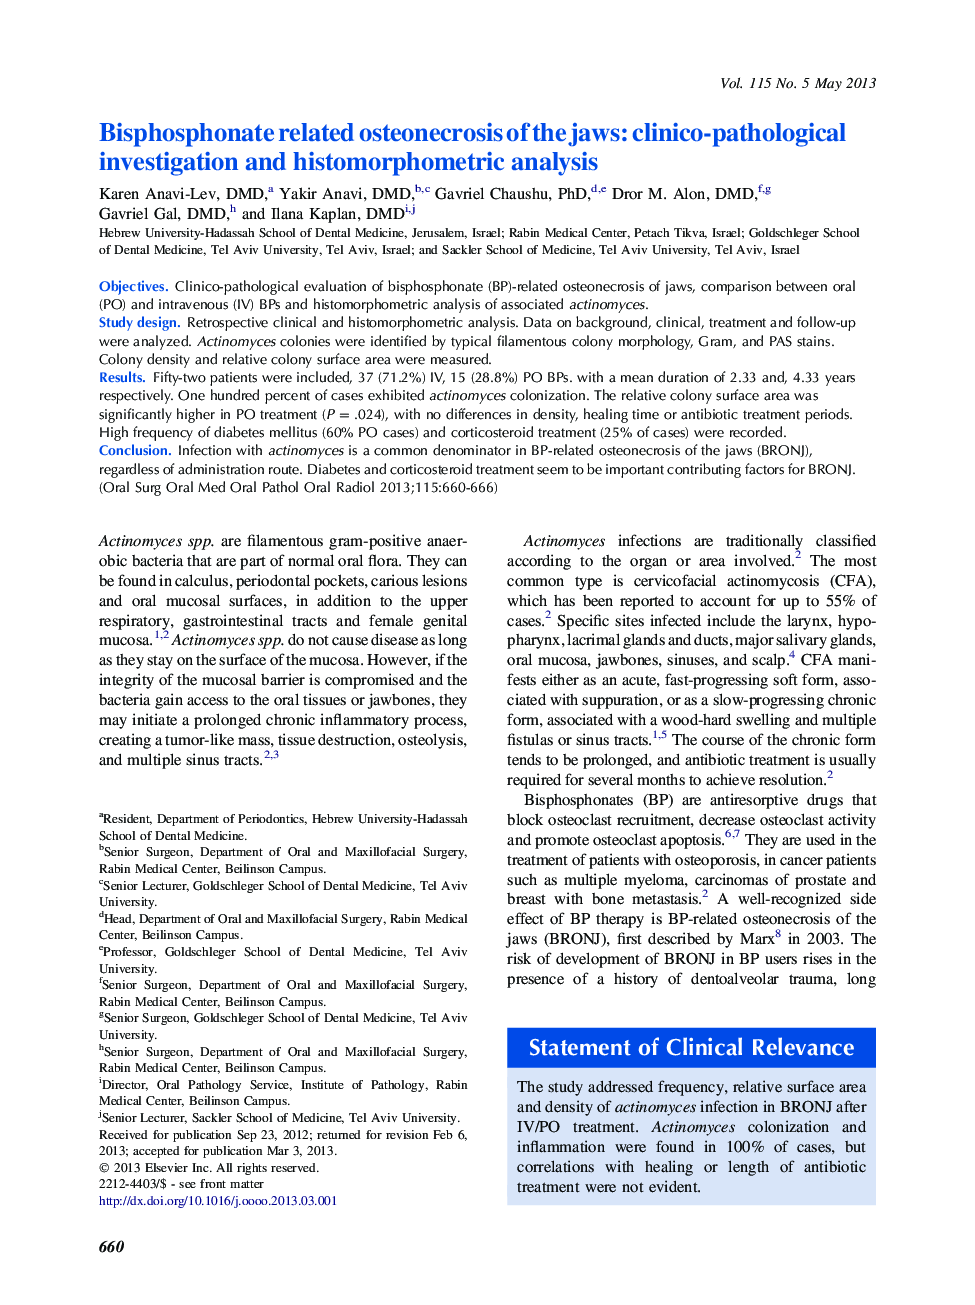 استئونکروسی مرتبط با بیسفسفونات فک: تحقیقات بالینی و پاتولوژیک و تحلیل هیستومورفومتری 